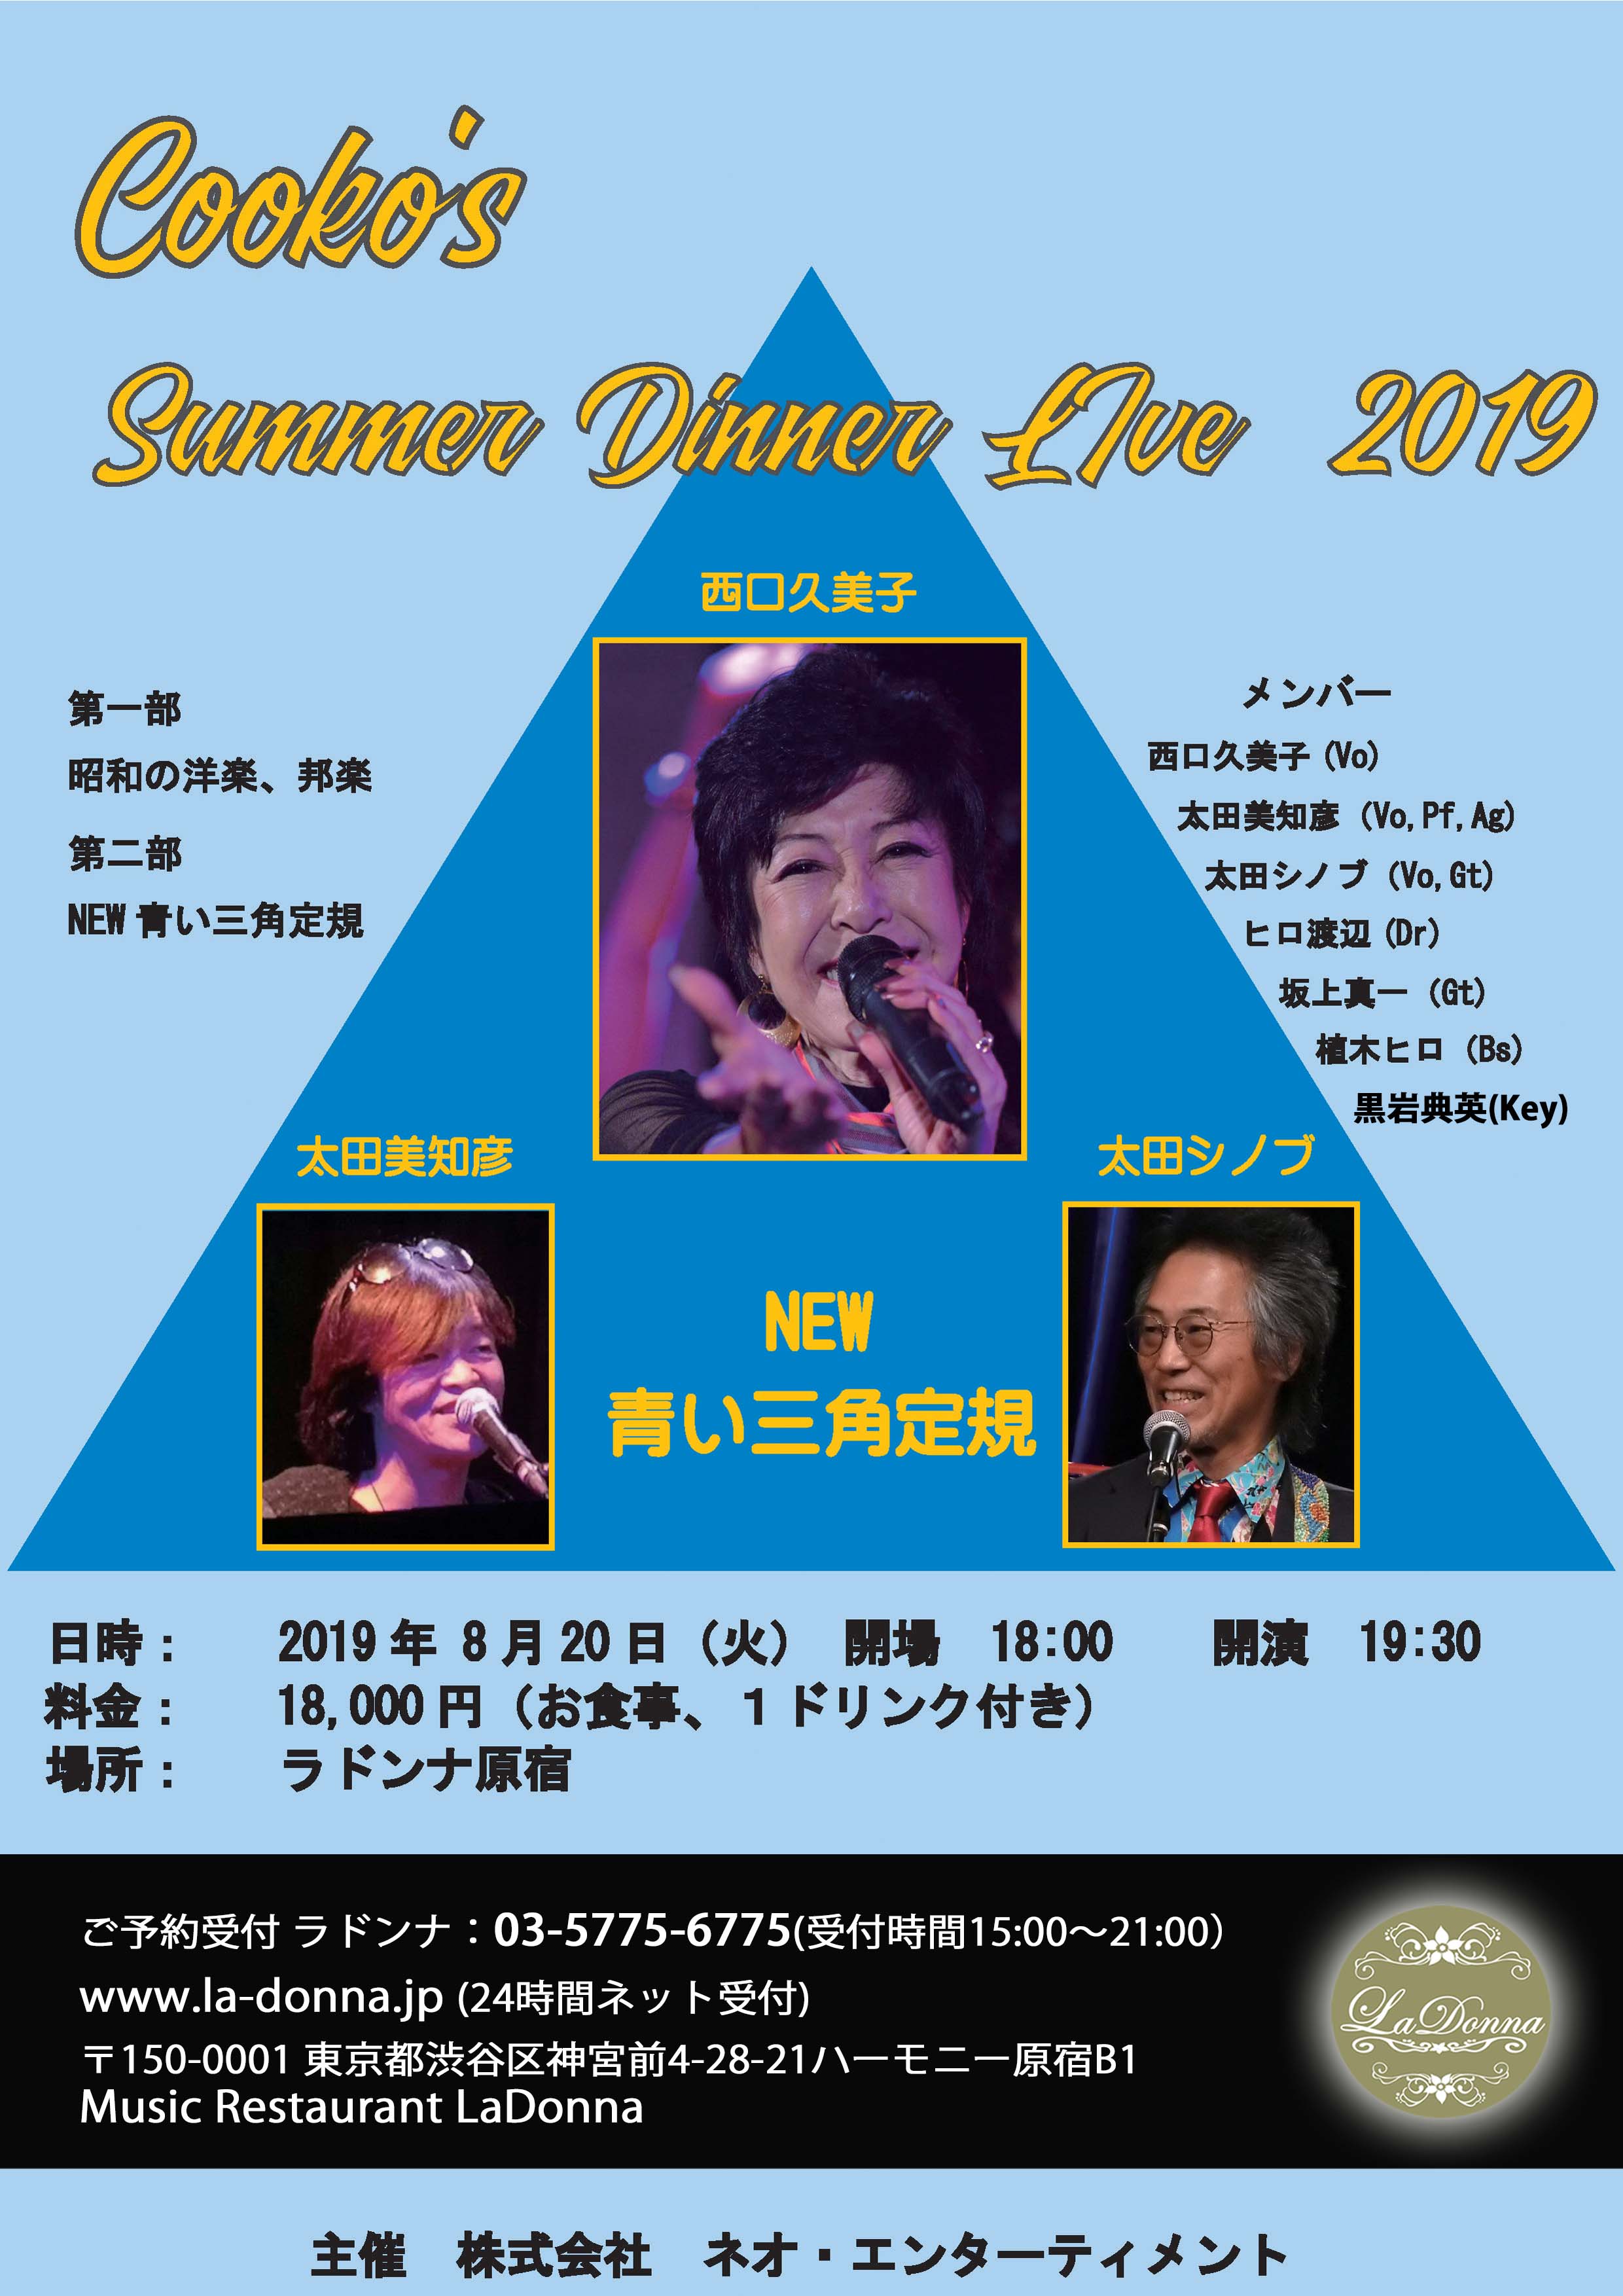 西口久美子 Cooko’s Summer Dinner Live 2019